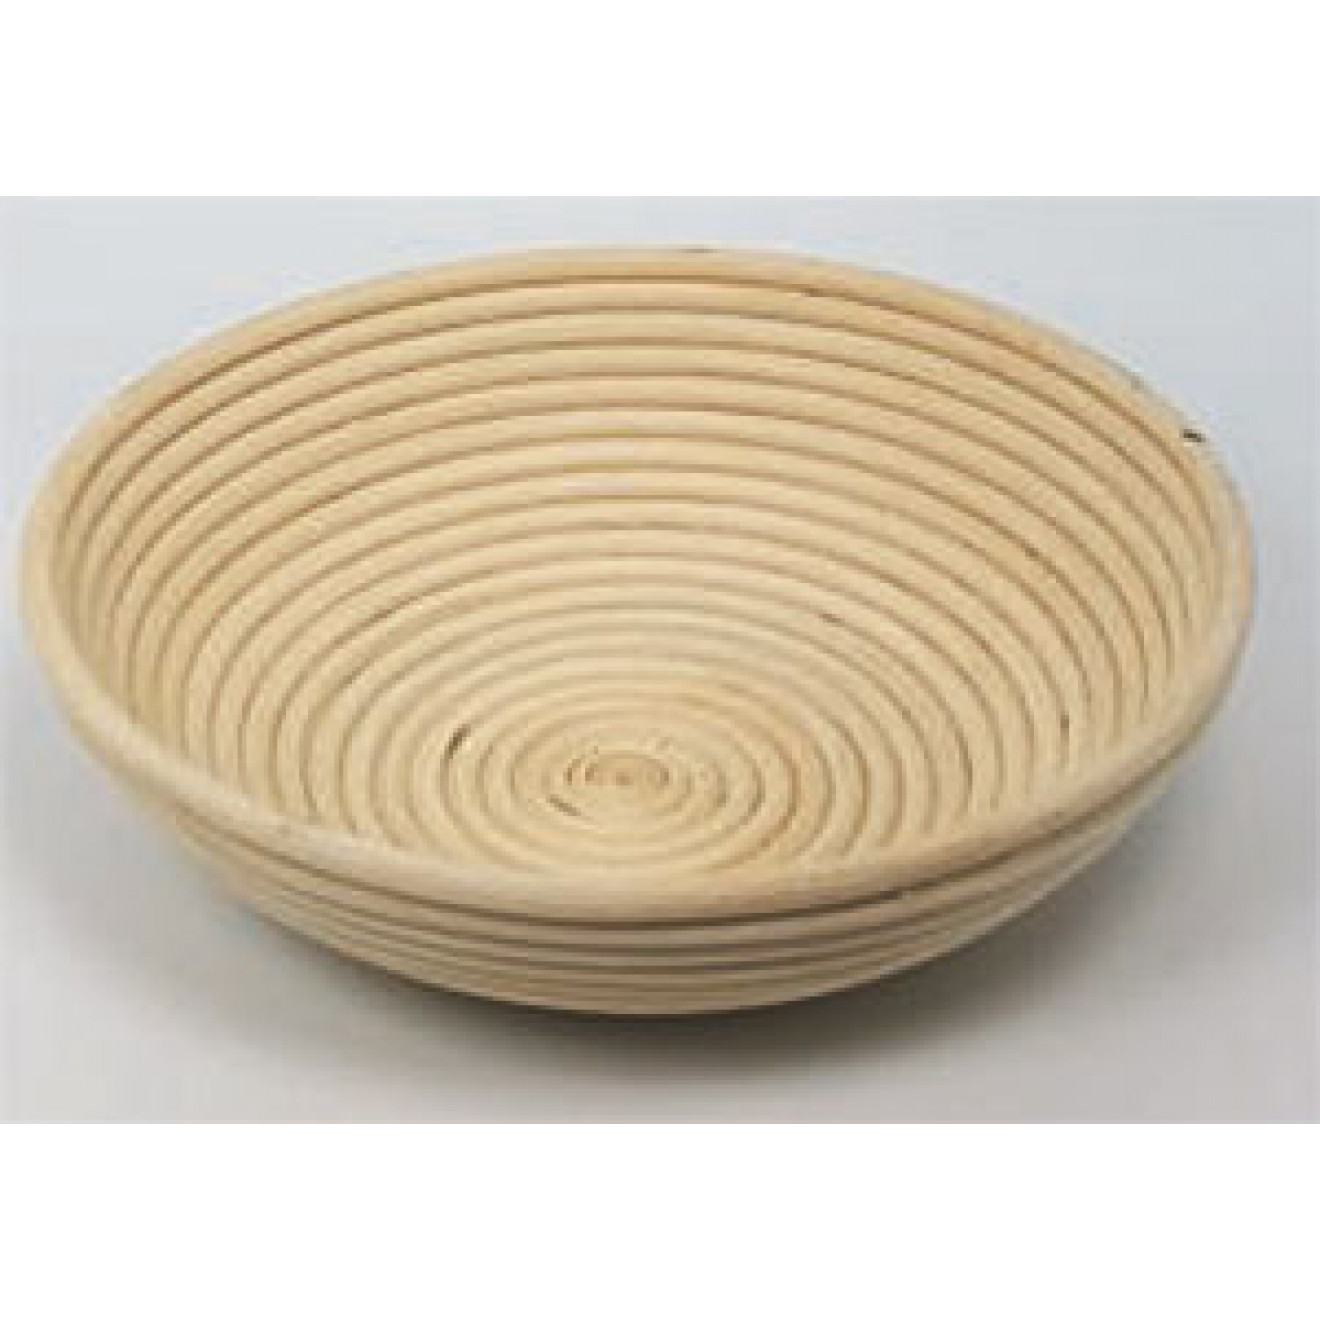 Banneton Bread Dough Proofing Basket, Round 11Inch (28cm) for 4.4lb (2kg) Dough